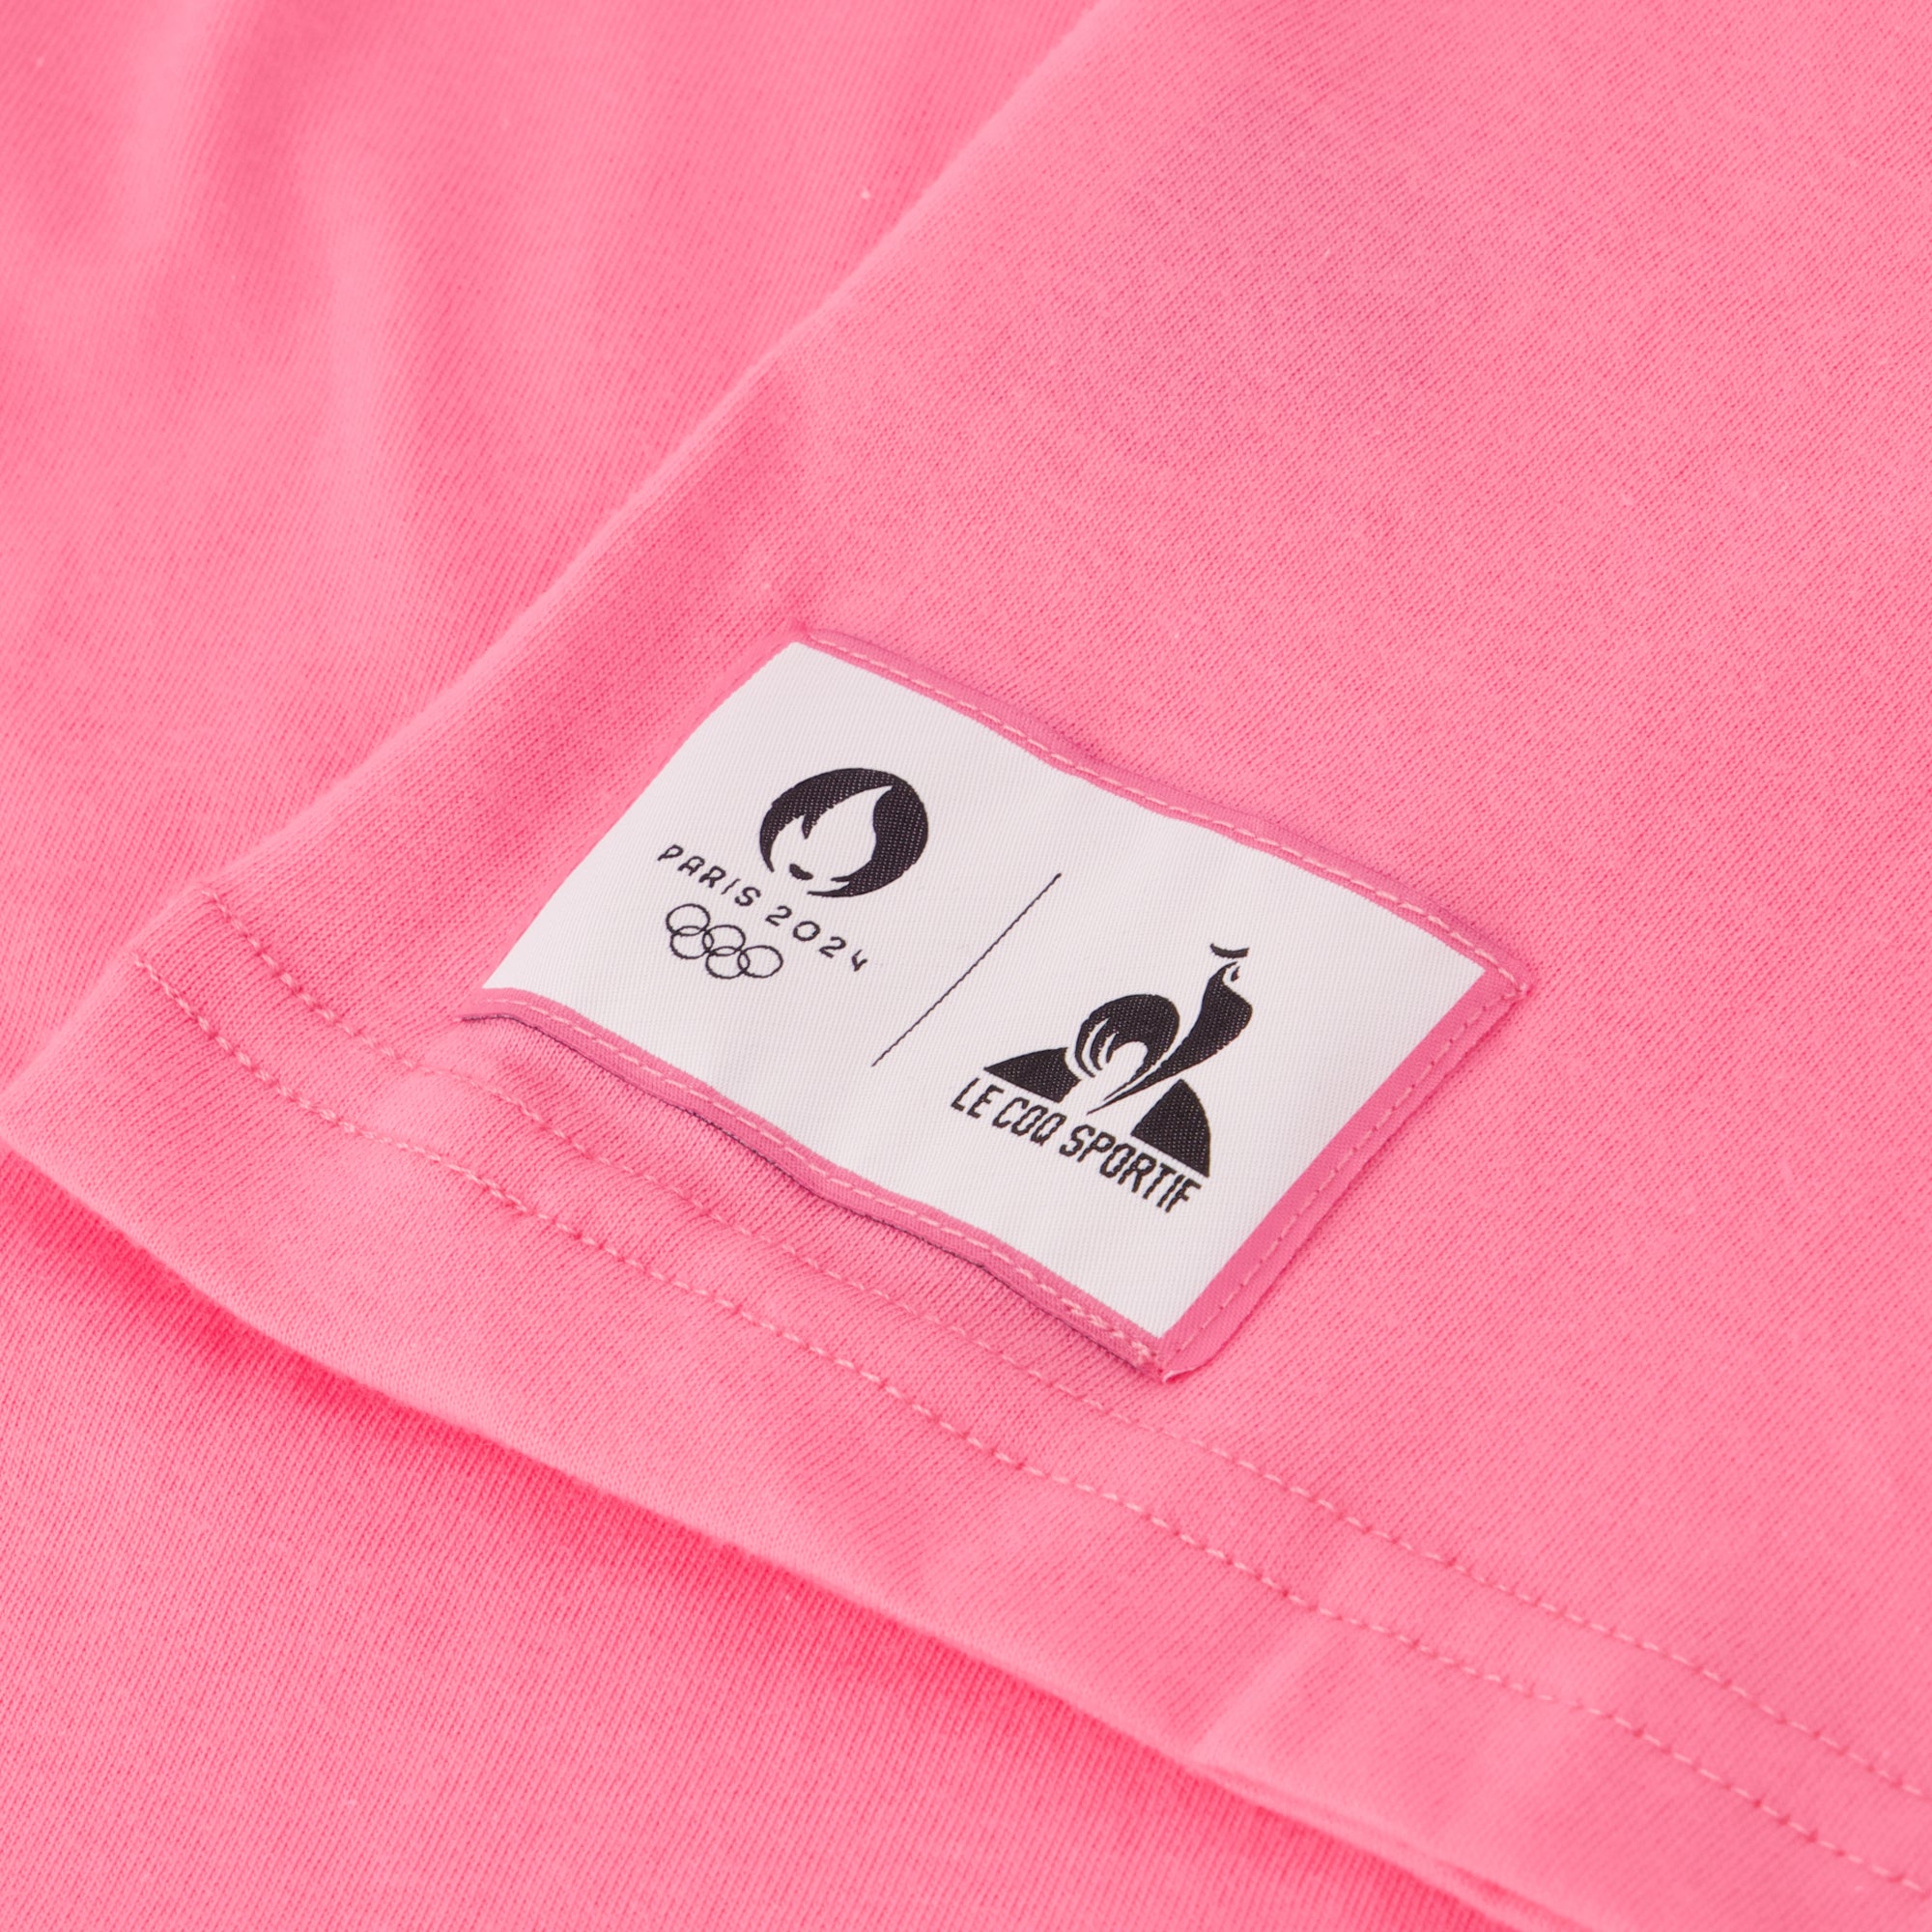 2410271-GRAPHIC P24 Tee SS N°4 M pink carnation  | T-Shirt für Herren